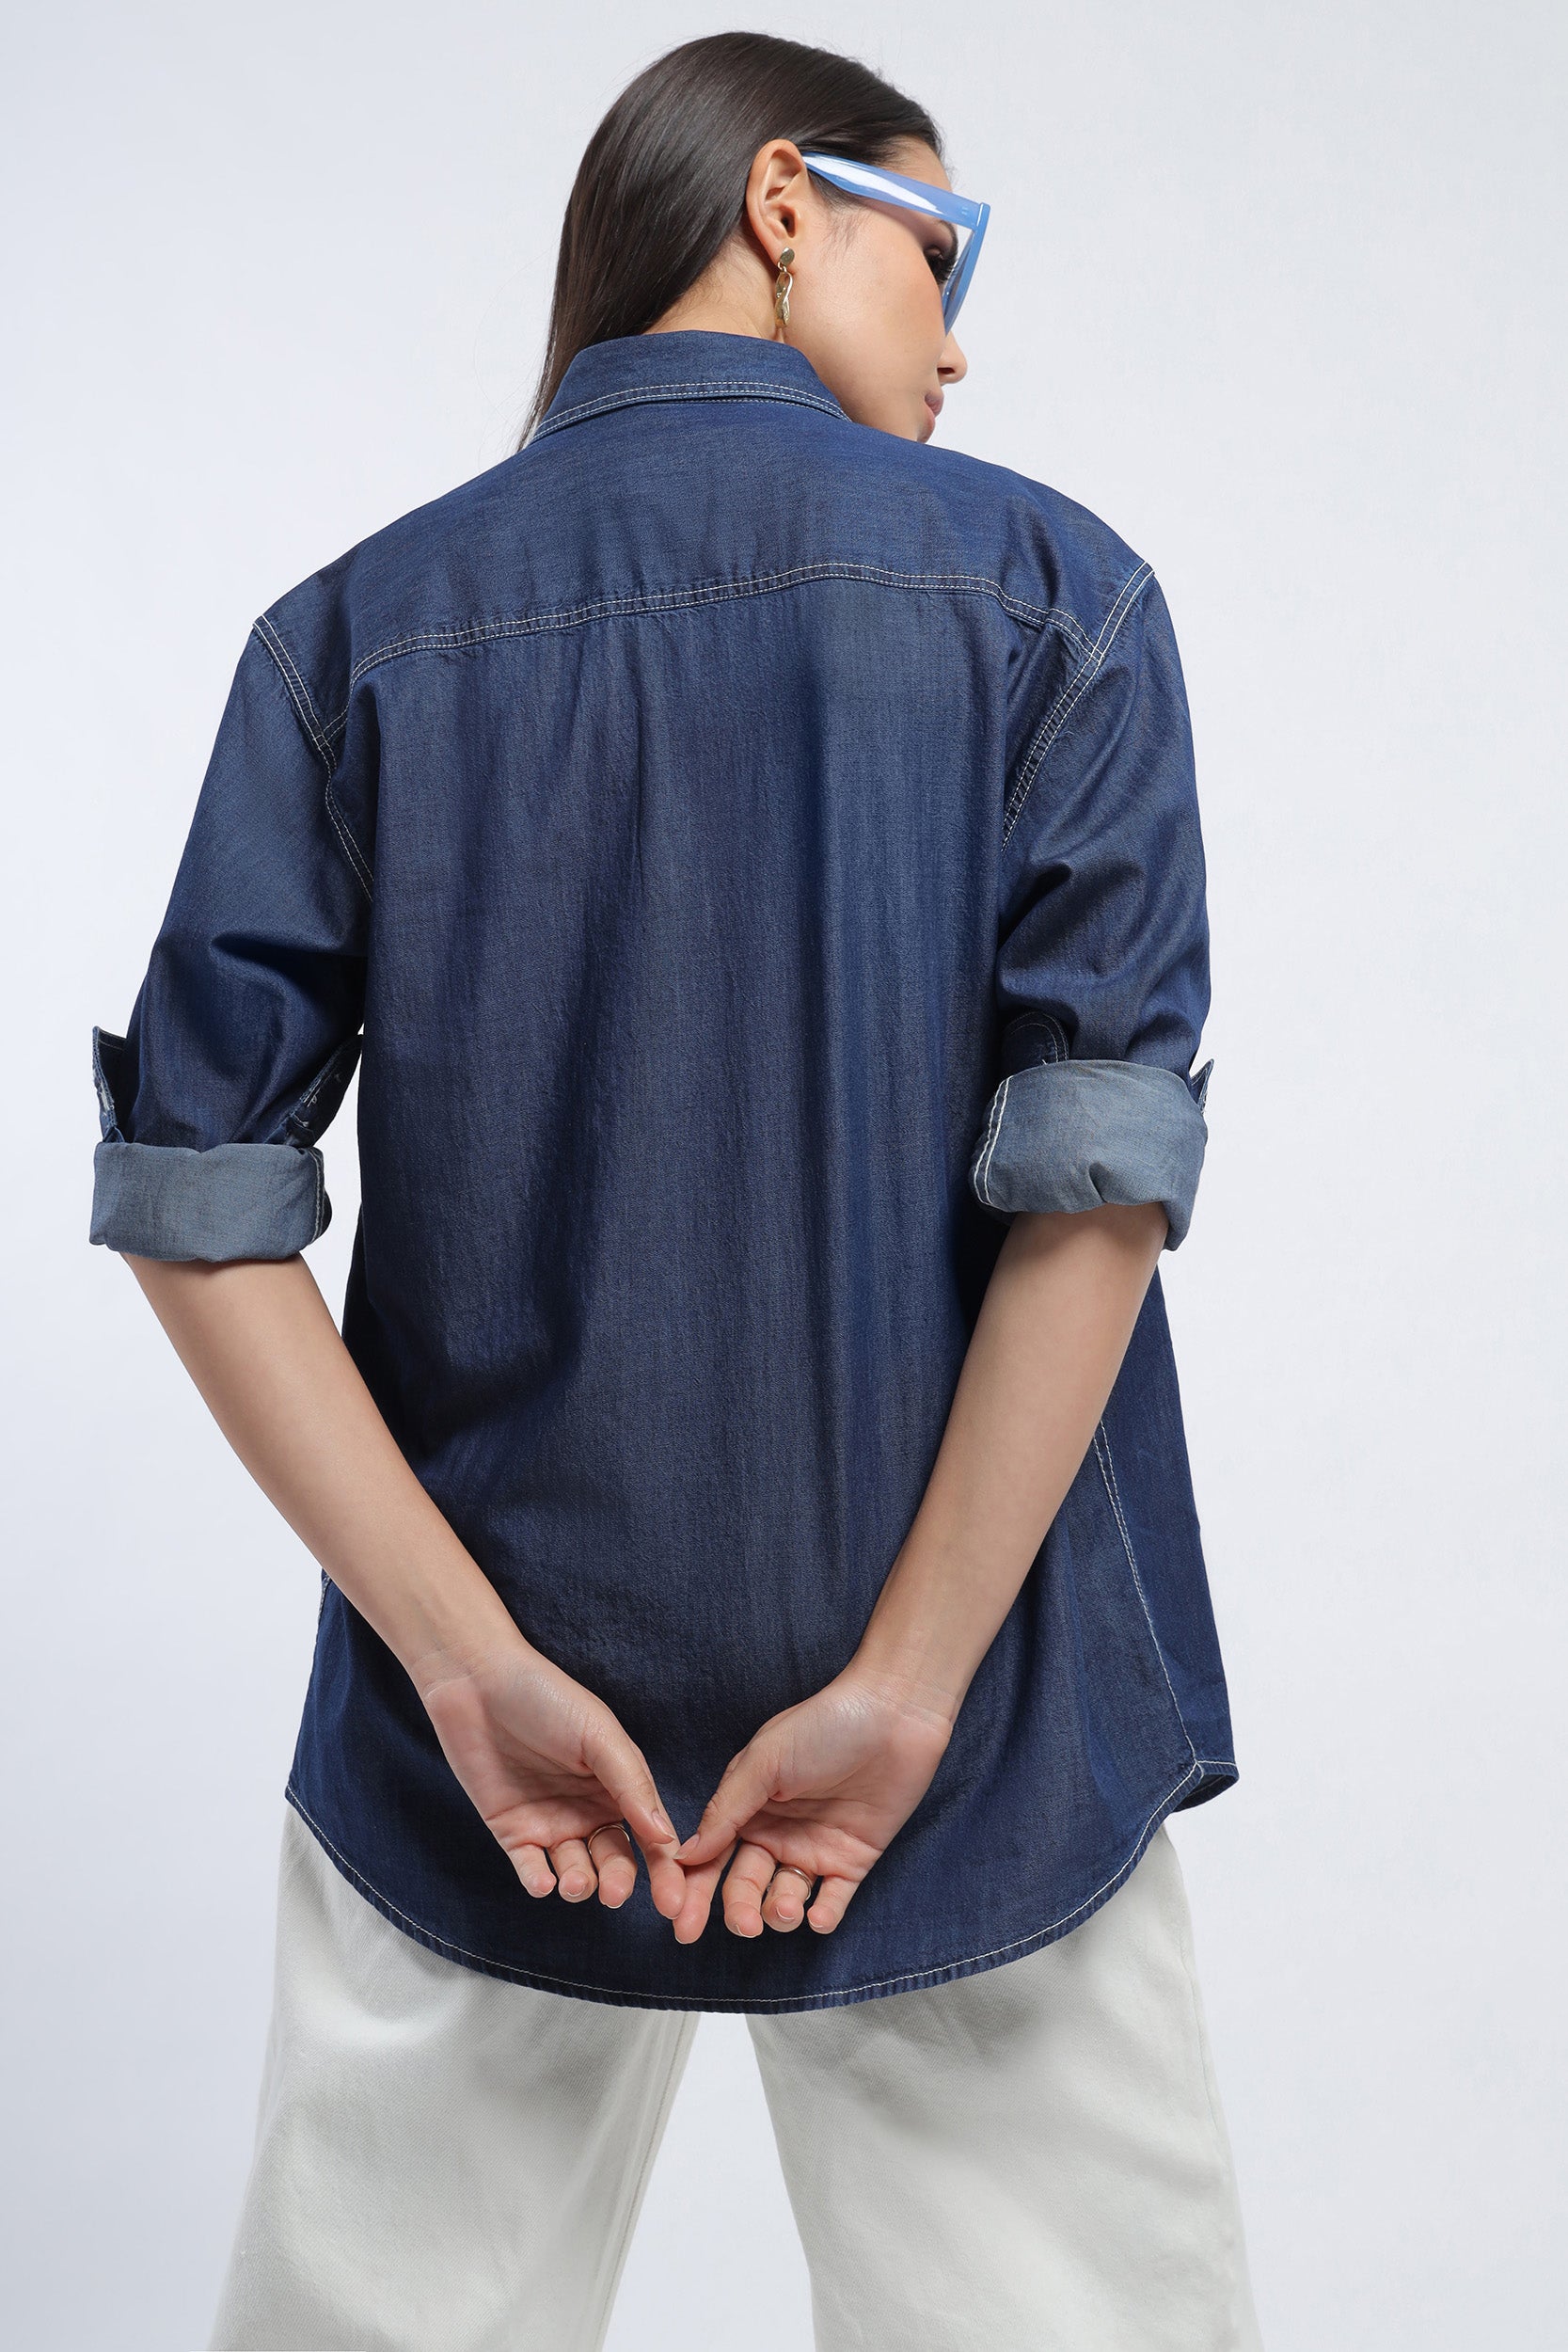 What to wear with an oversized denim shirt – Jess Keys